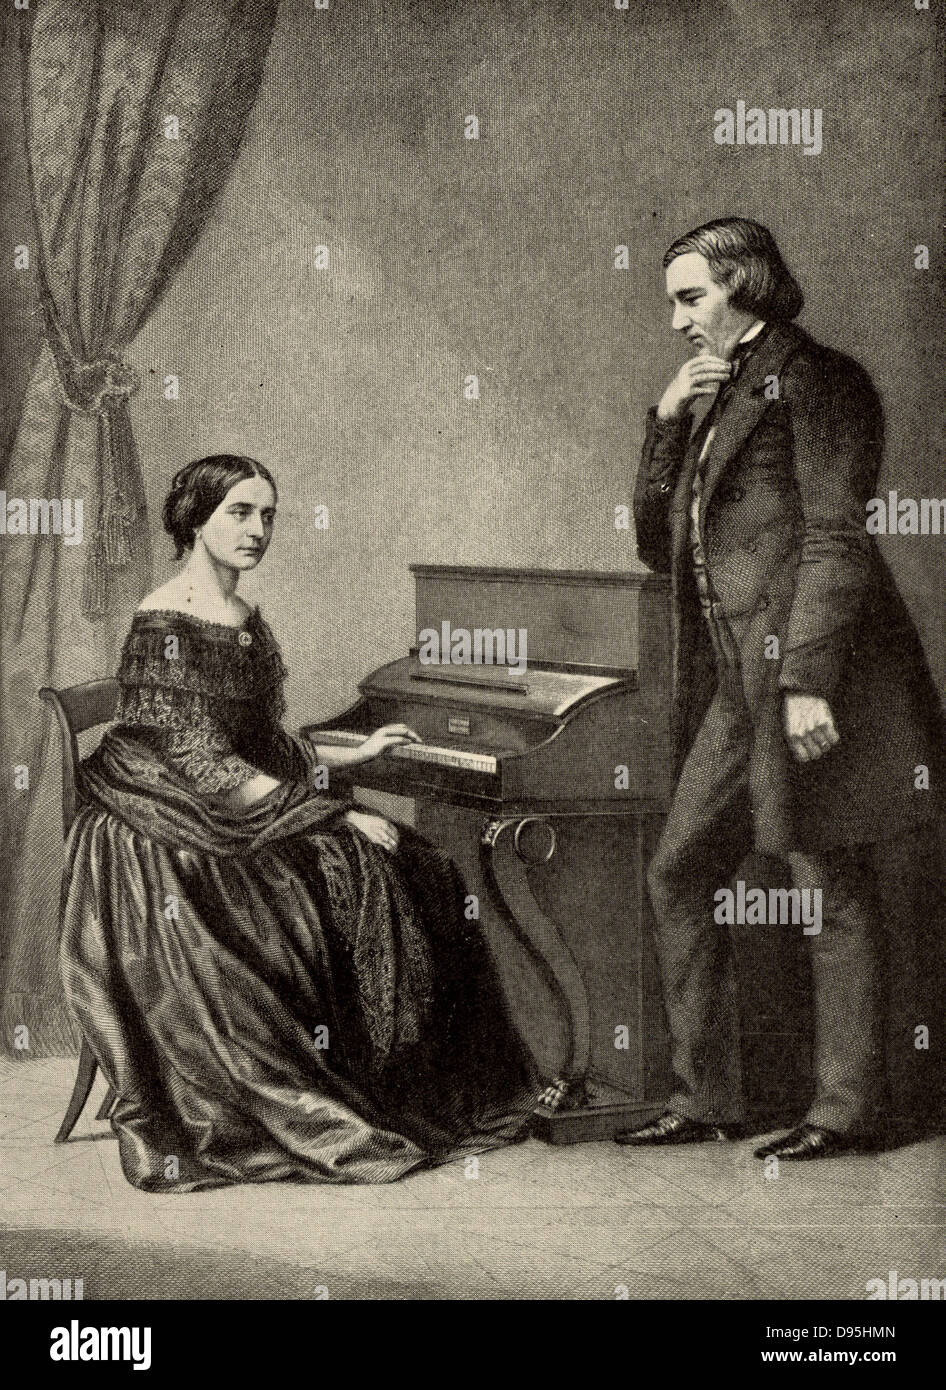 Robert Schumann (1810-1856) deutsche romantische Komponist mit seiner Frau Clara (geb. Wieck). Aus einem Foto. Halbton. Stockfoto